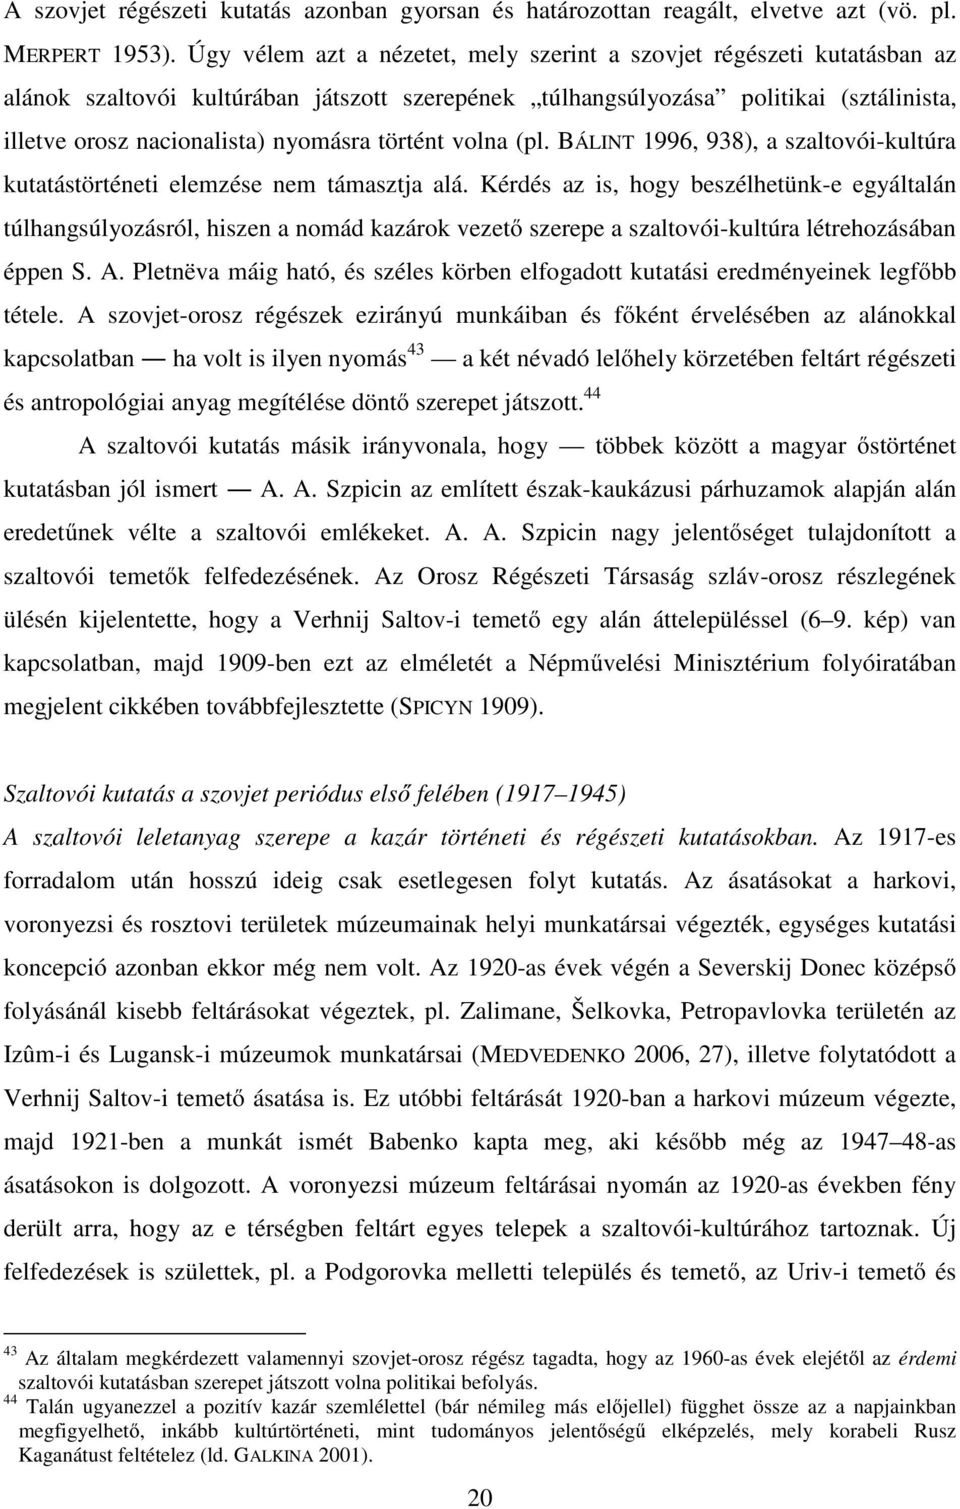 történt volna (pl. BÁLINT 1996, 938), a szaltovói-kultúra kutatástörténeti elemzése nem támasztja alá.